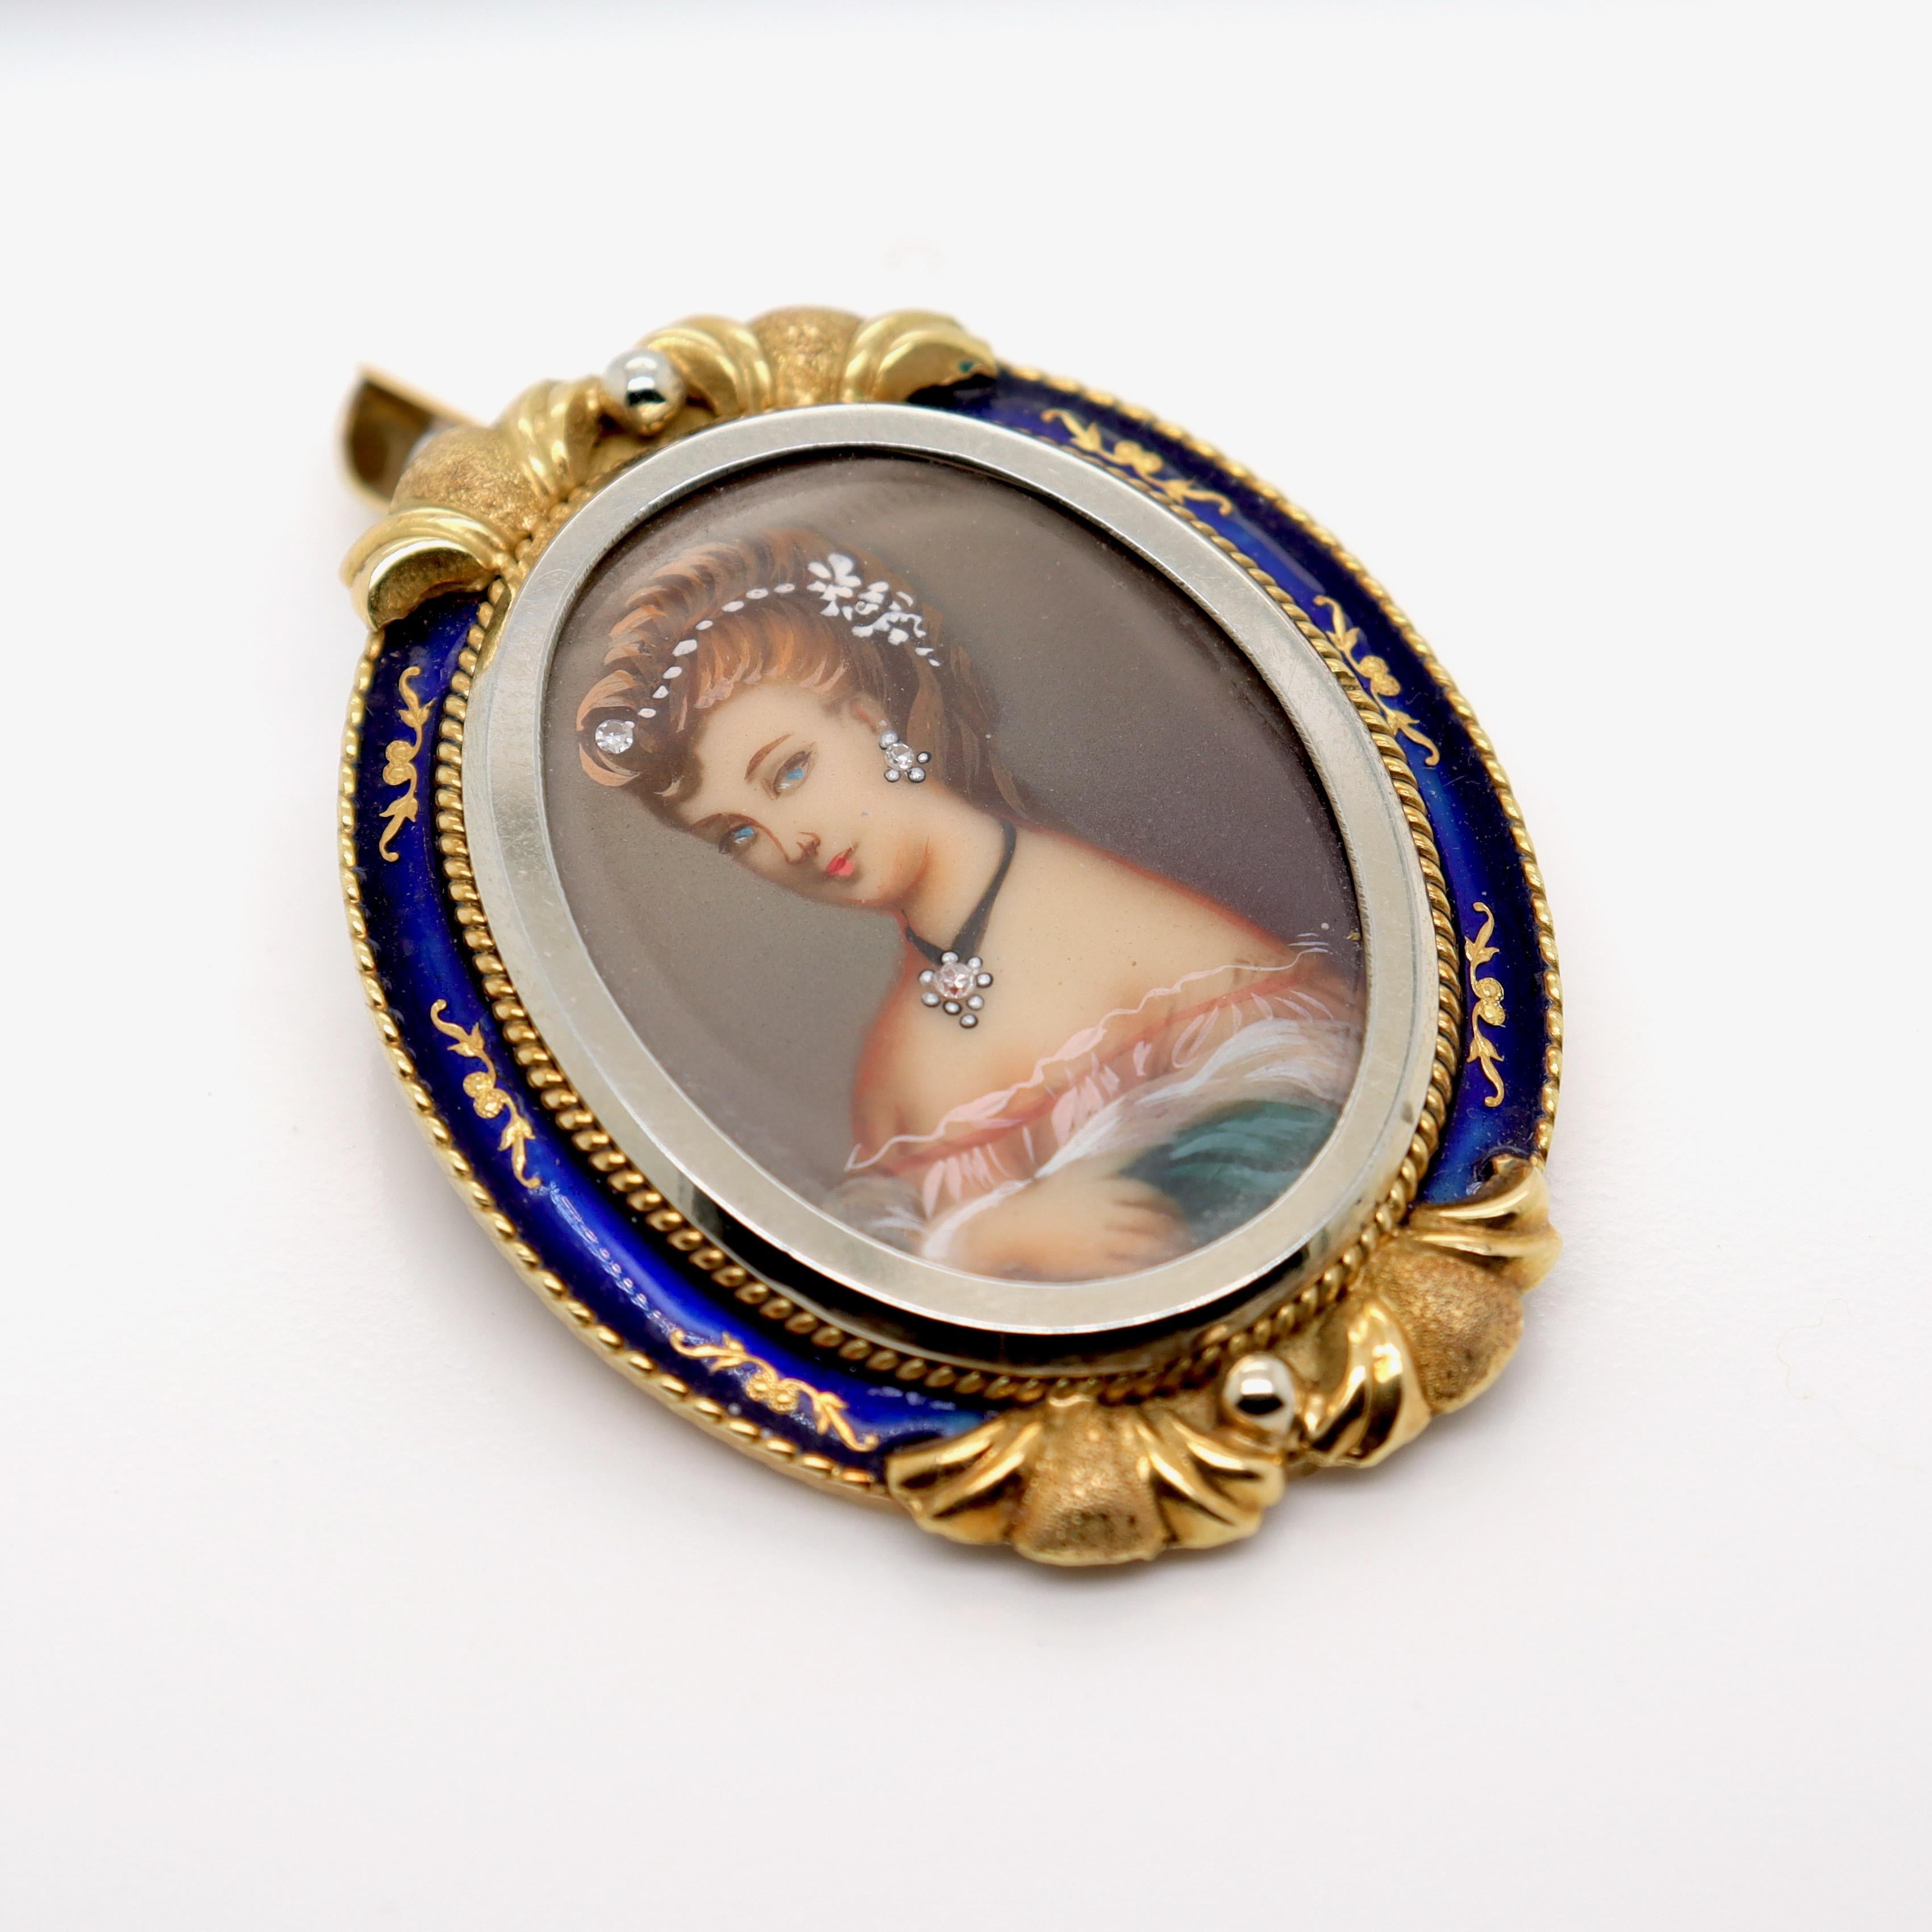 Women's Vintage Corletto 18K Gold & Blue Enamel Portrait Miniature Brooch or Pendant For Sale